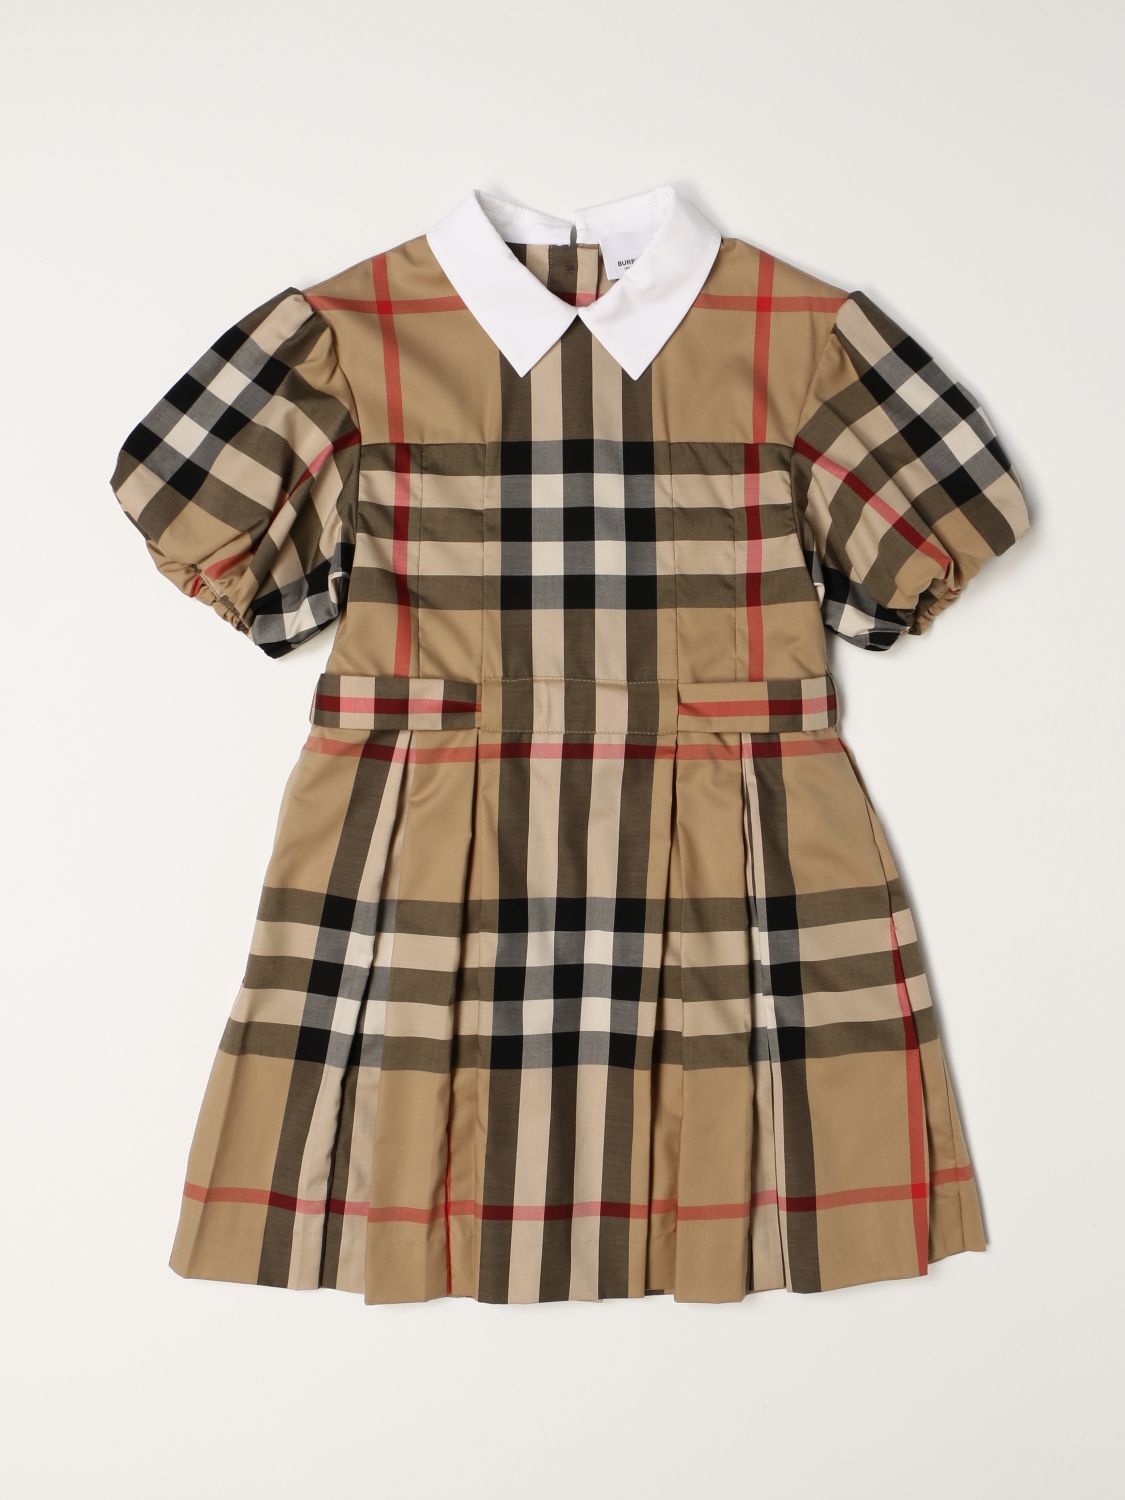 Newborn Burberry Dress Flash Sales, 53 ...